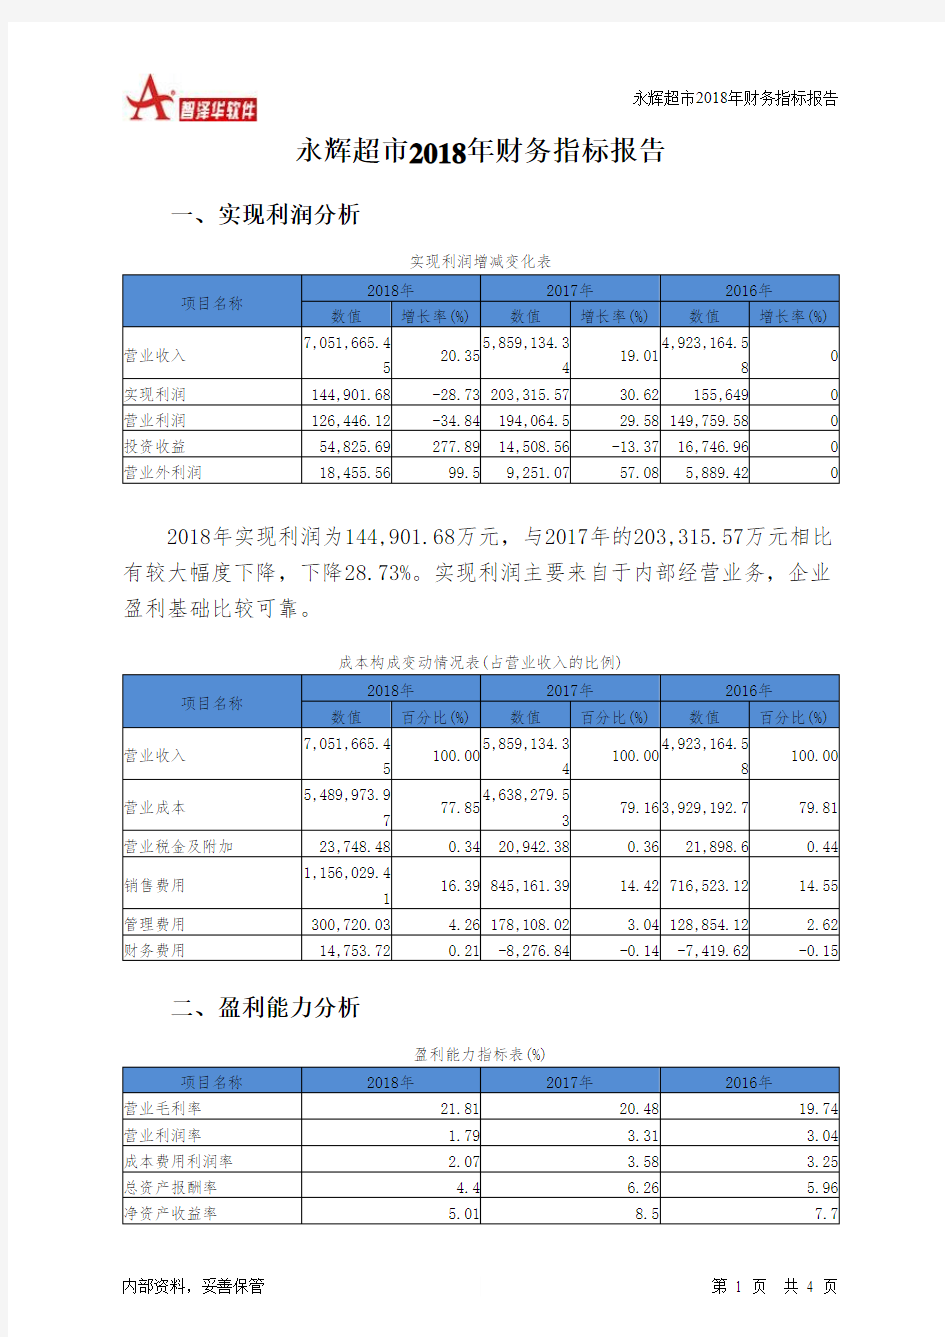 永辉超市2018年财务指标报告-智泽华